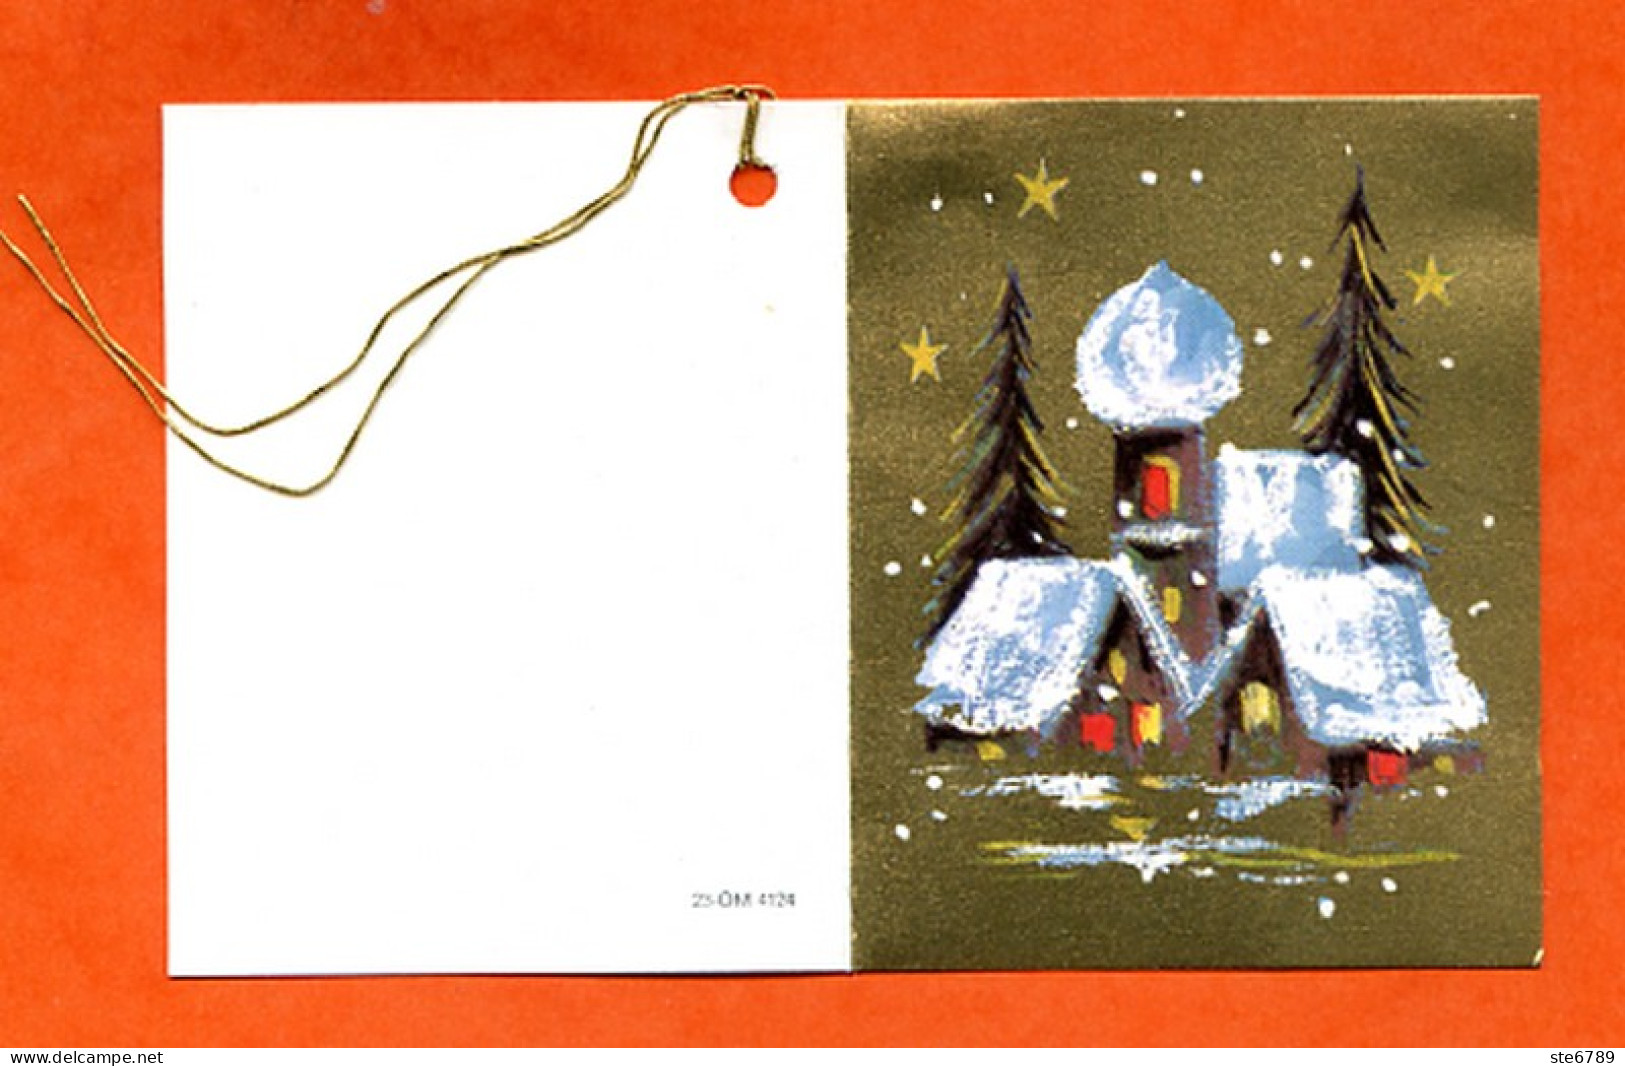 Etiquette Cadeau  Joyeux Noel Mini Carte Maisons Sapins 2 Pour Cadeaux - Papá Noel